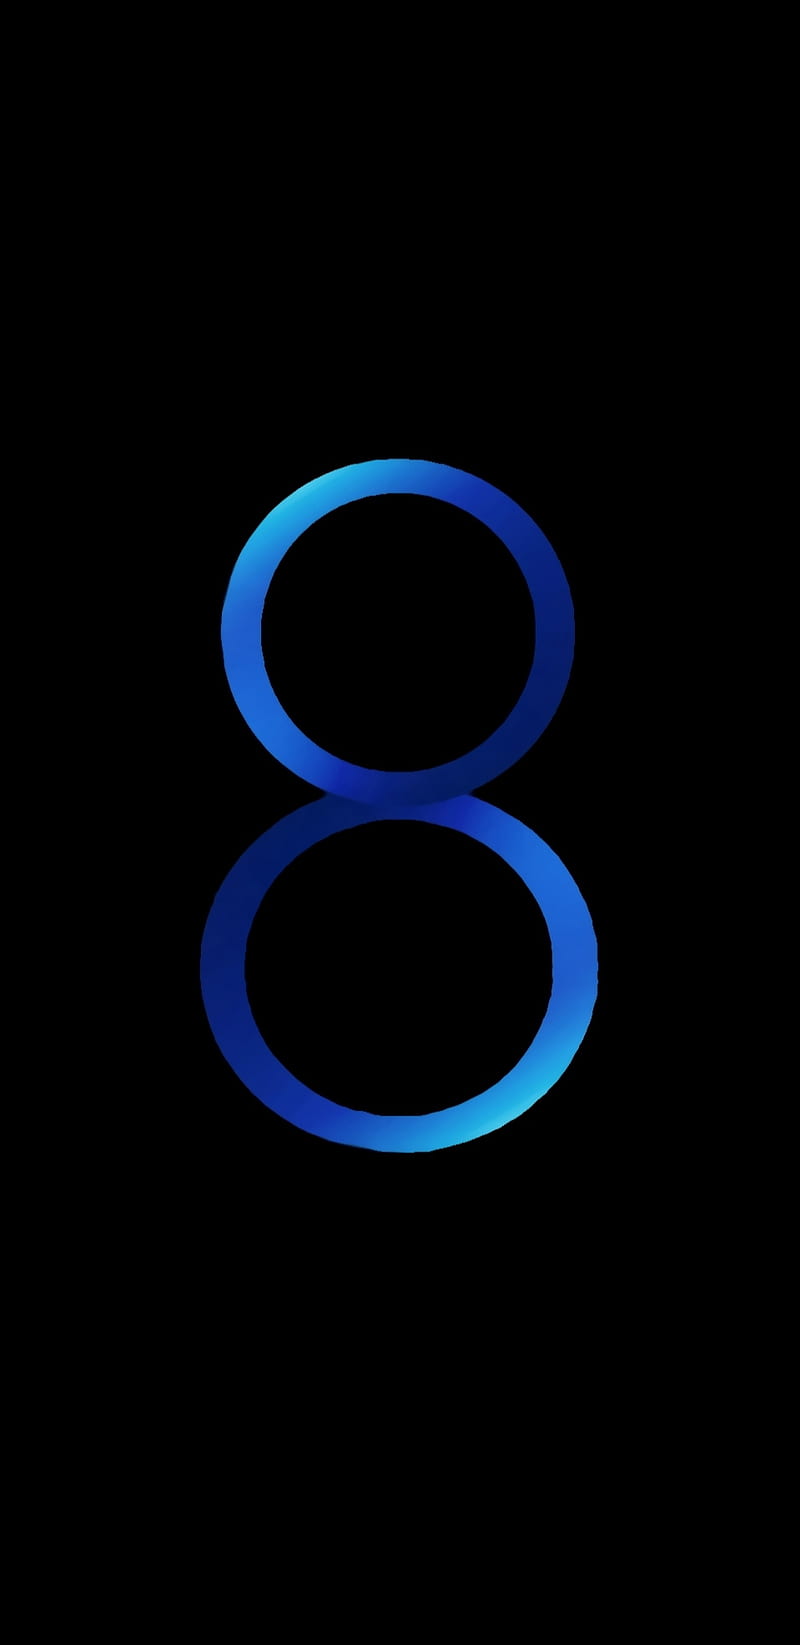 S8 s9 style, amoled, blue, 8, black